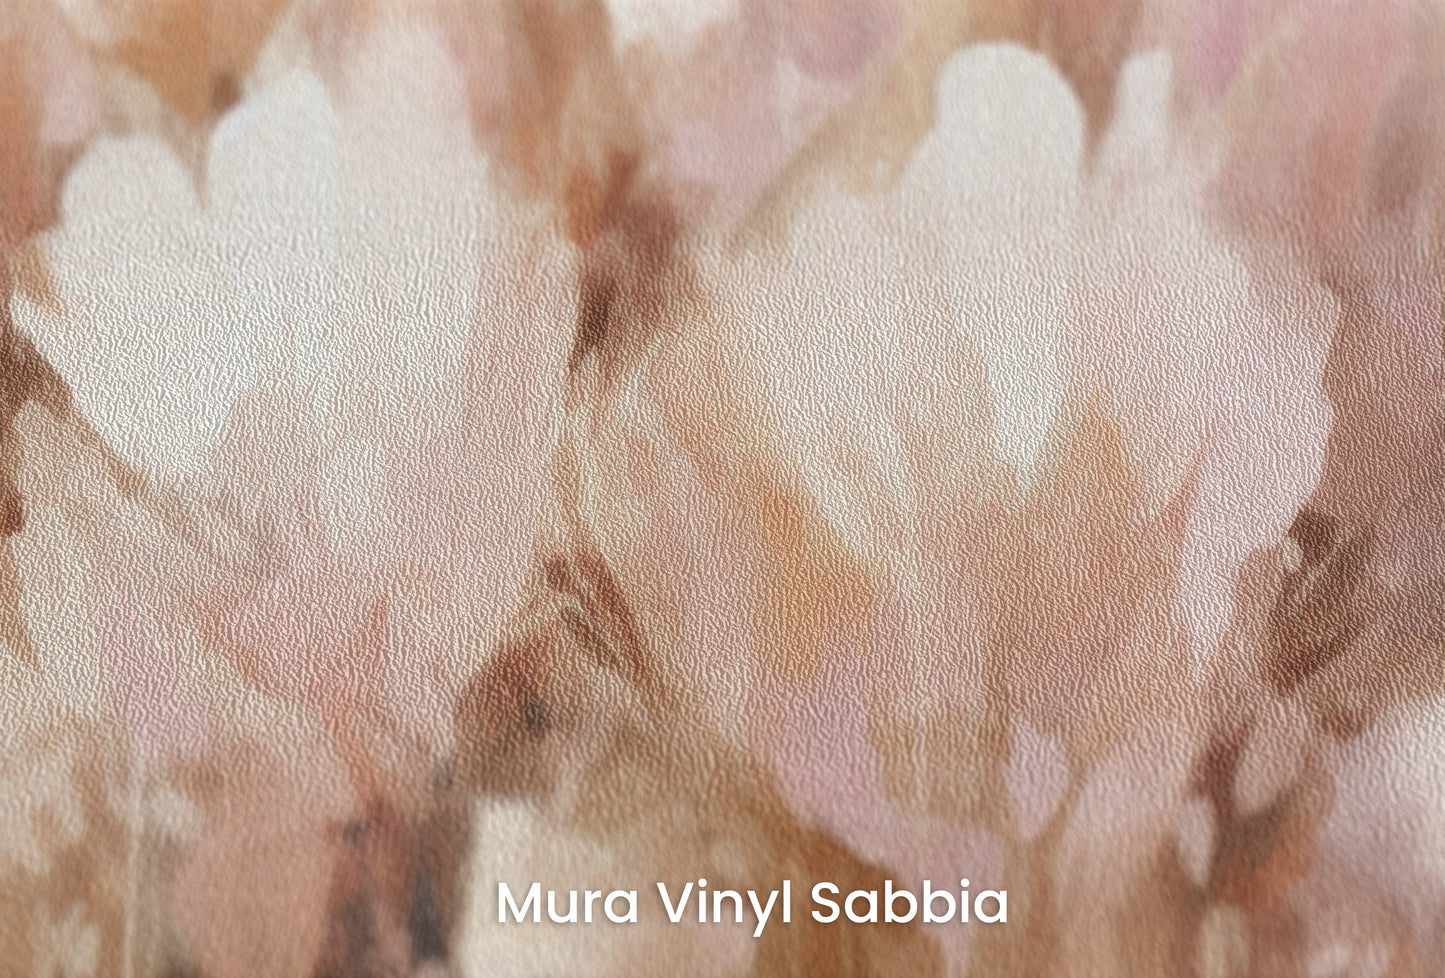 Zbliżenie na artystyczną fototapetę o nazwie Petal Whisper na podłożu Mura Vinyl Sabbia struktura grubego ziarna piasku.